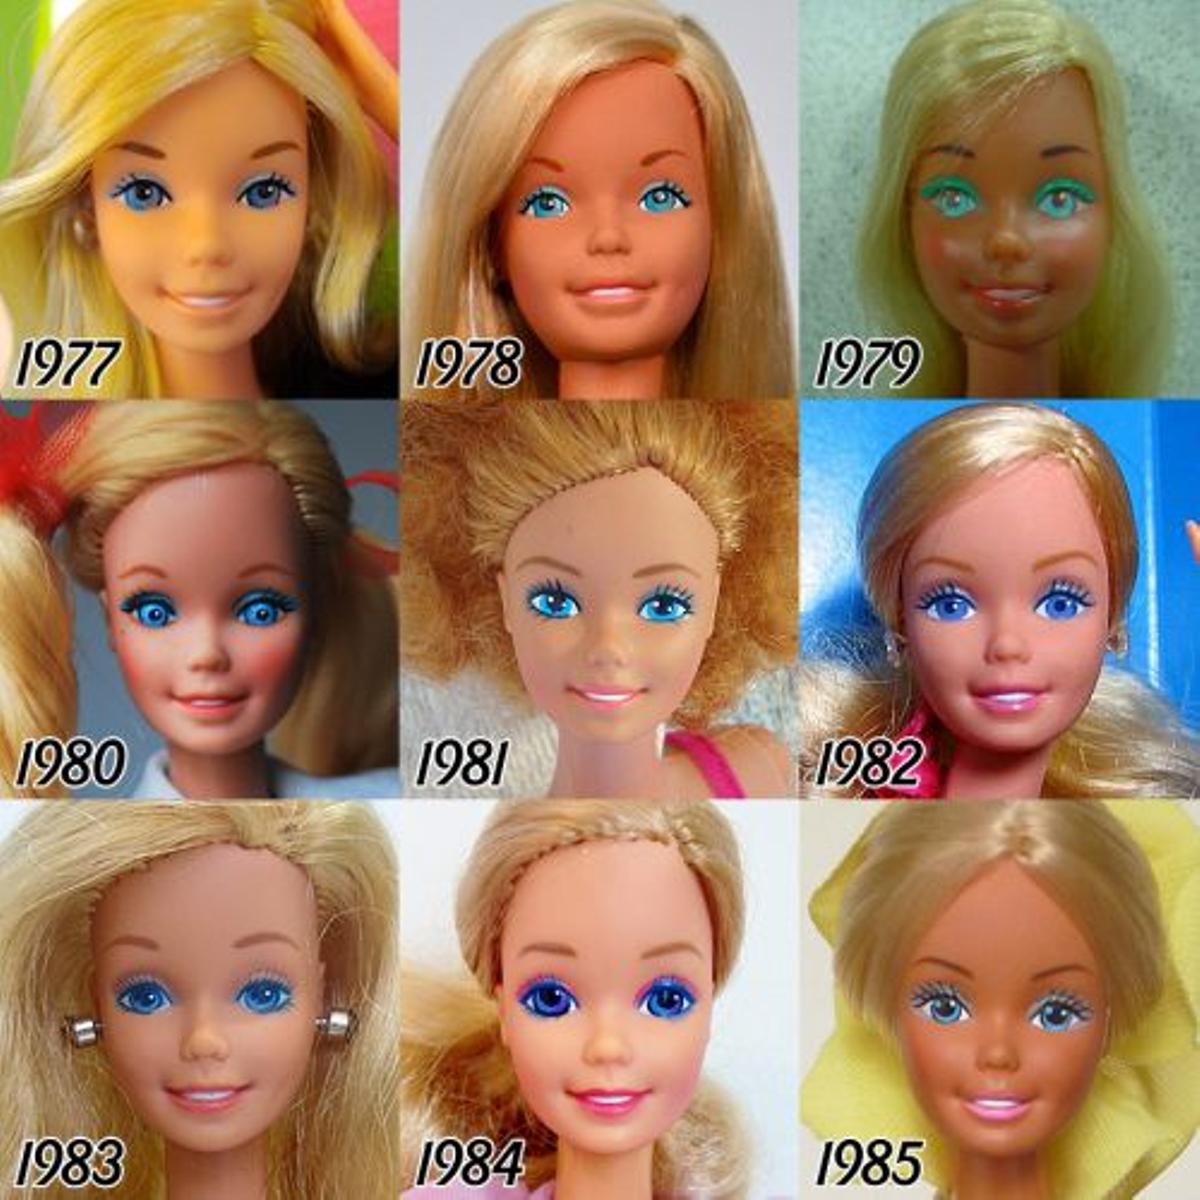 La evolución de Barbie desde 1977 a 1985